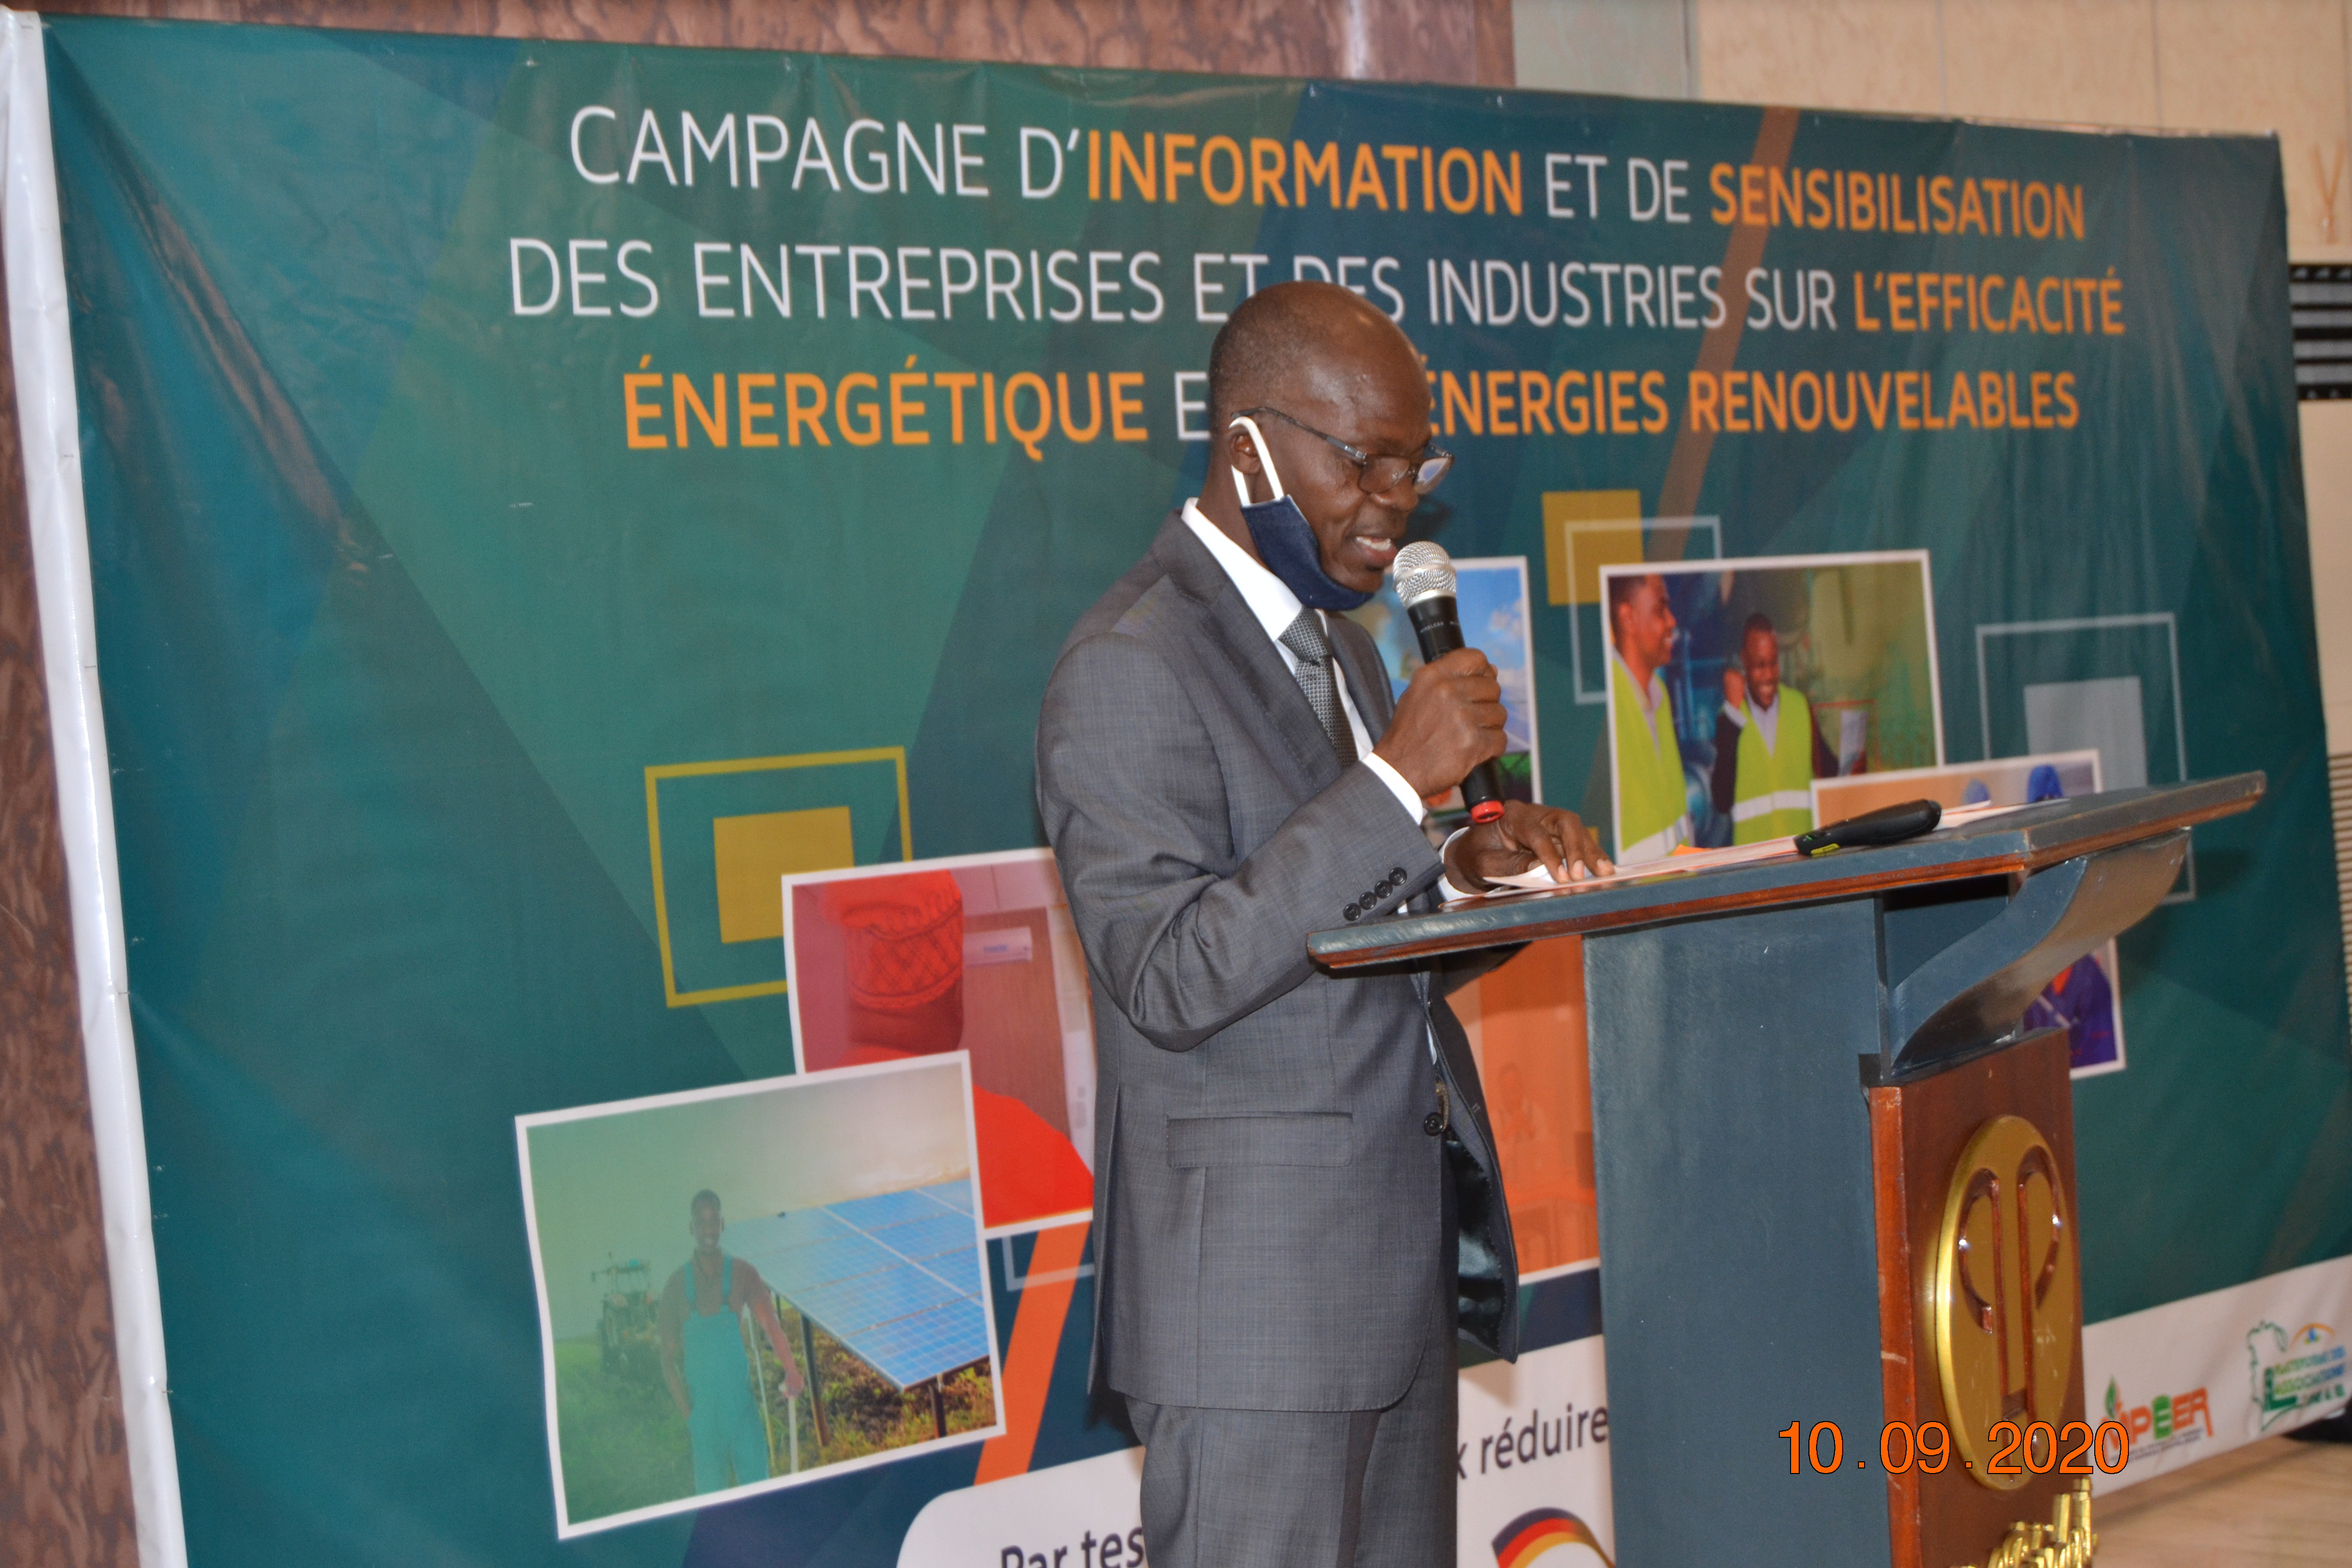 Efficacité Energétique et Energie Renouvelable : les entreprises situées à Yamoussoukro bénéficient de la campagne de sensibilisation et d’information des entreprises et des industries